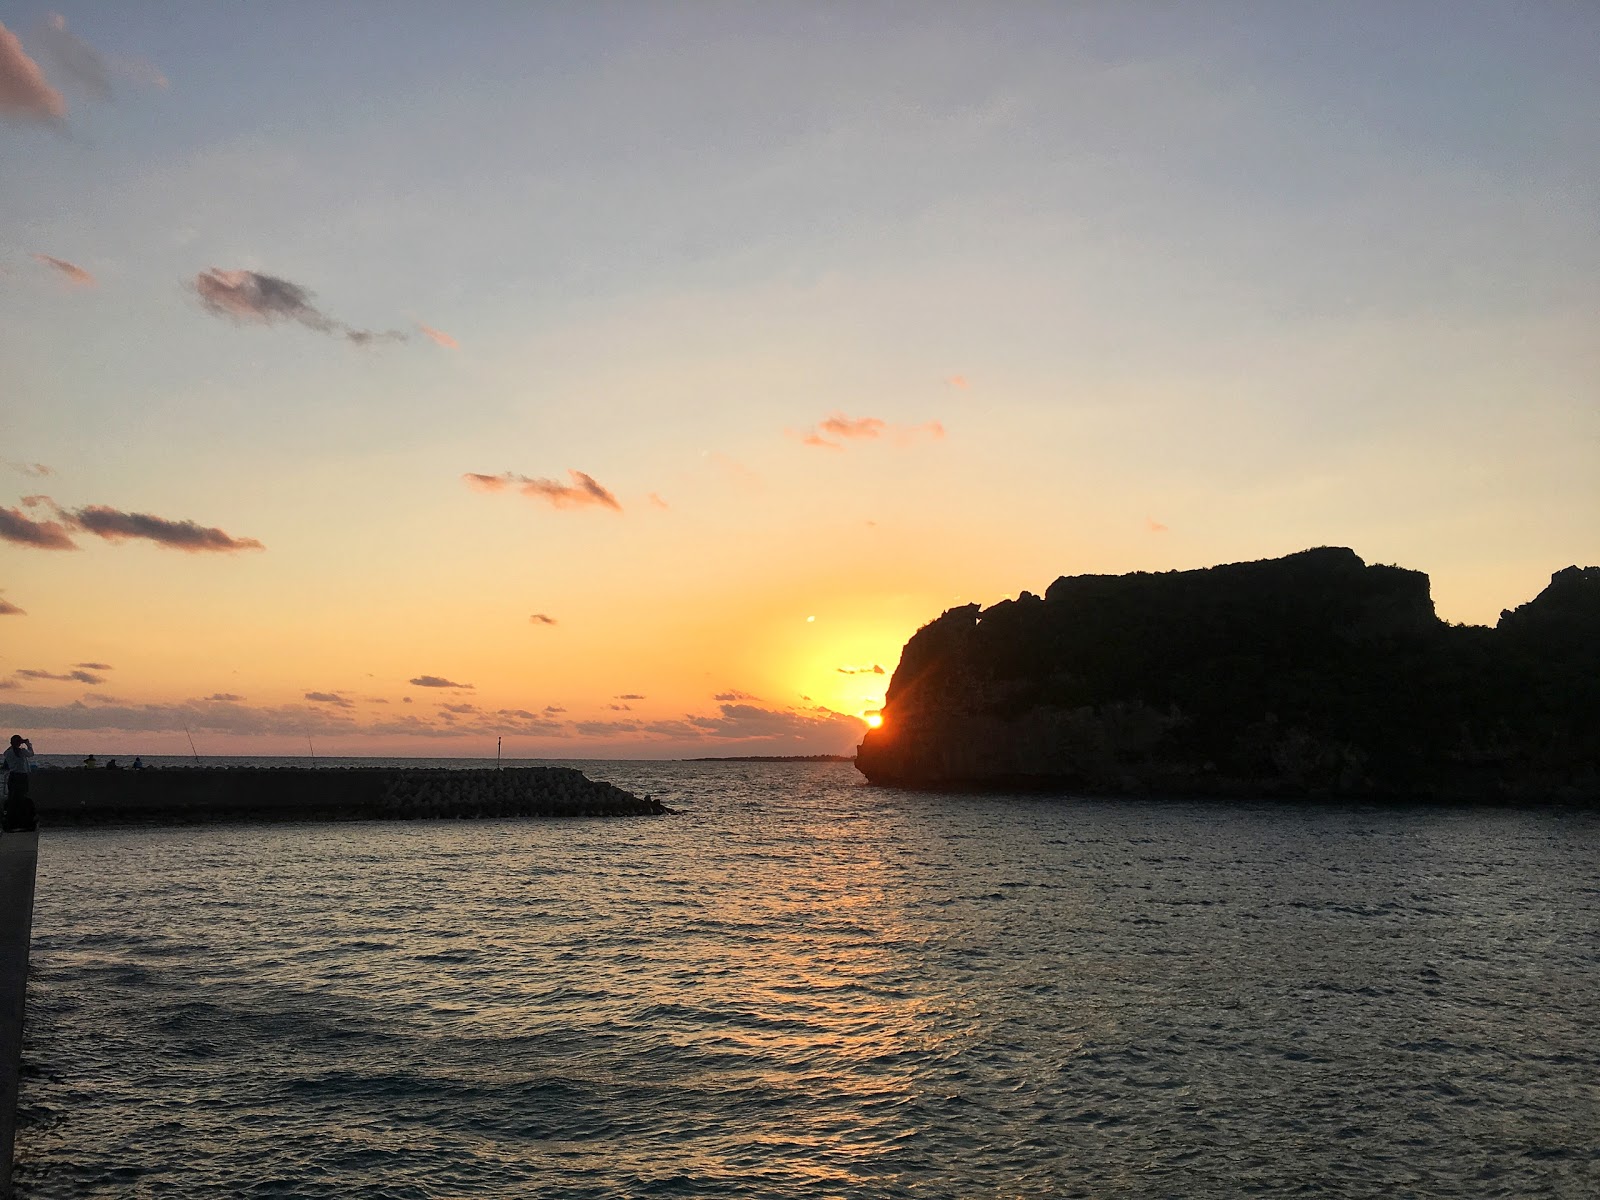 sunrise, okinawa, hamahiga island, pacific ocean, hatsuhinode, new year, japan